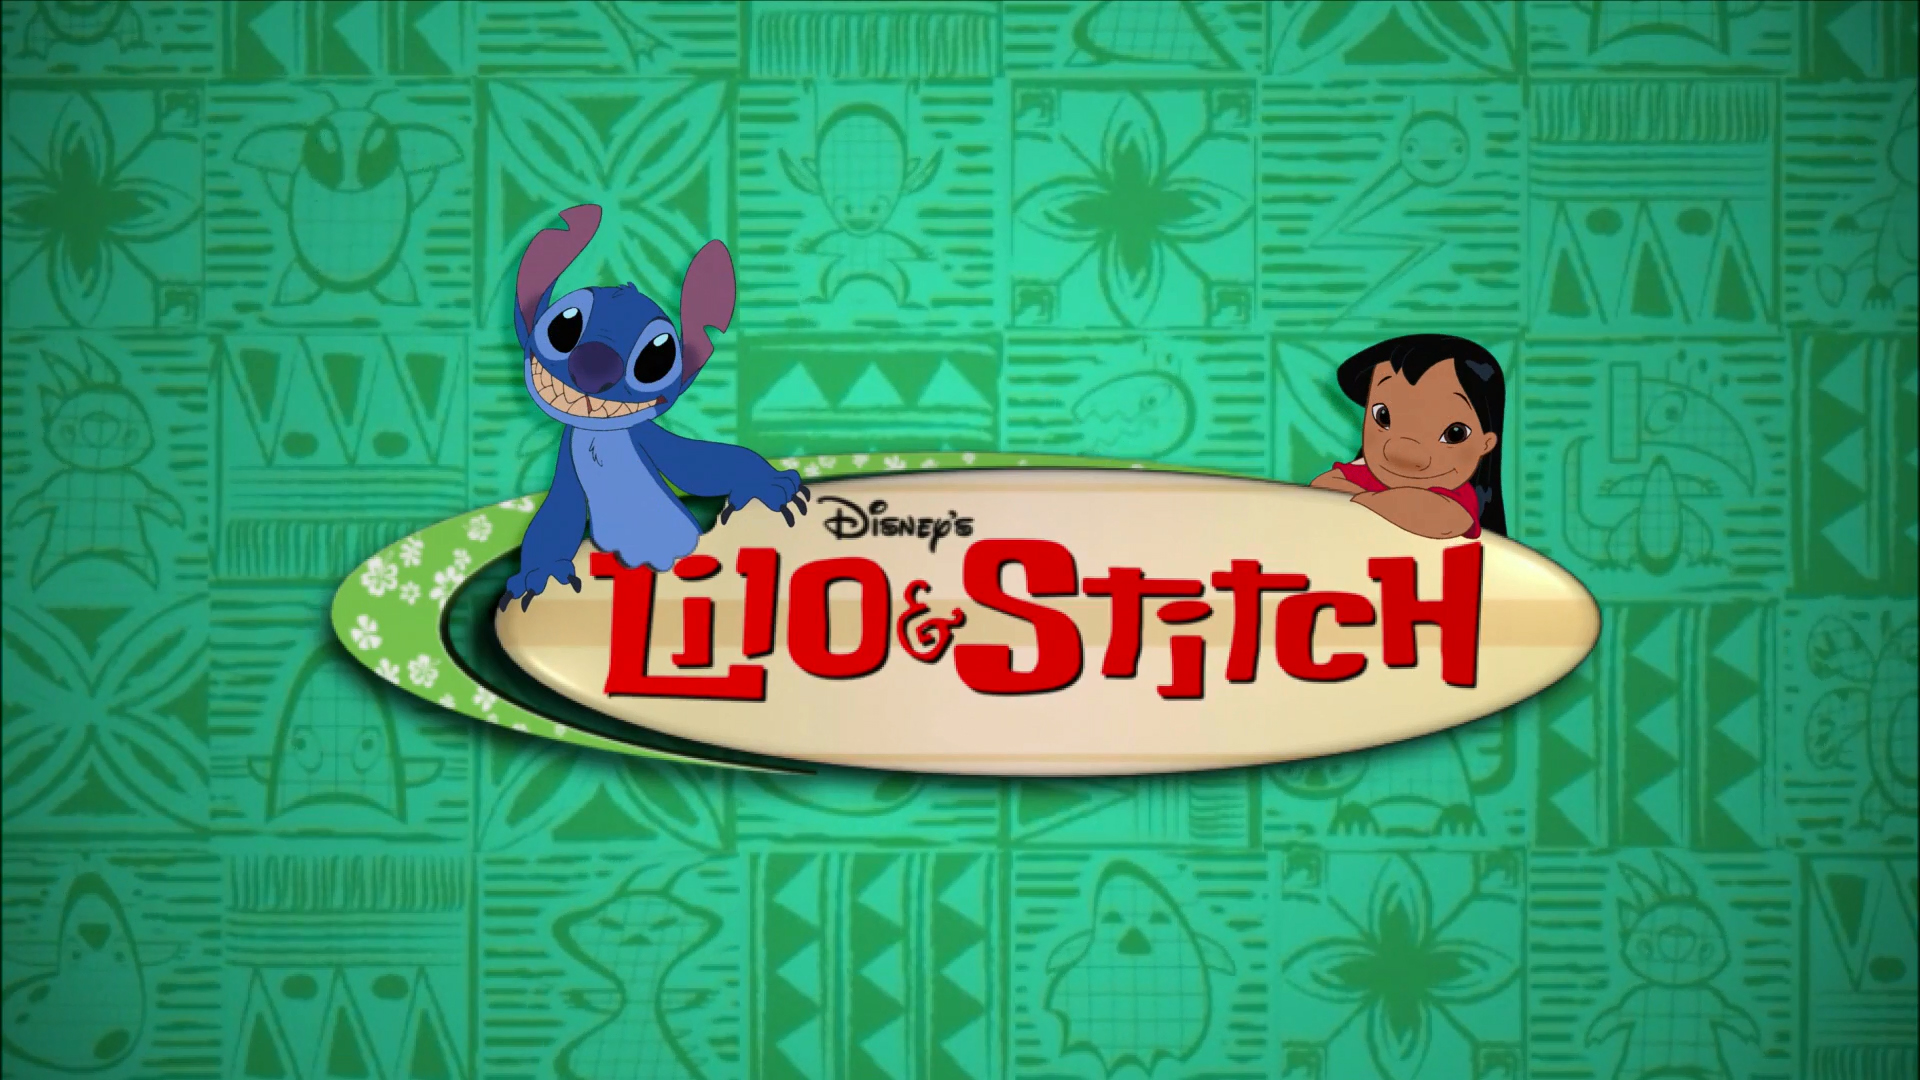 Lilo & Stitch episode list, Disney Wiki